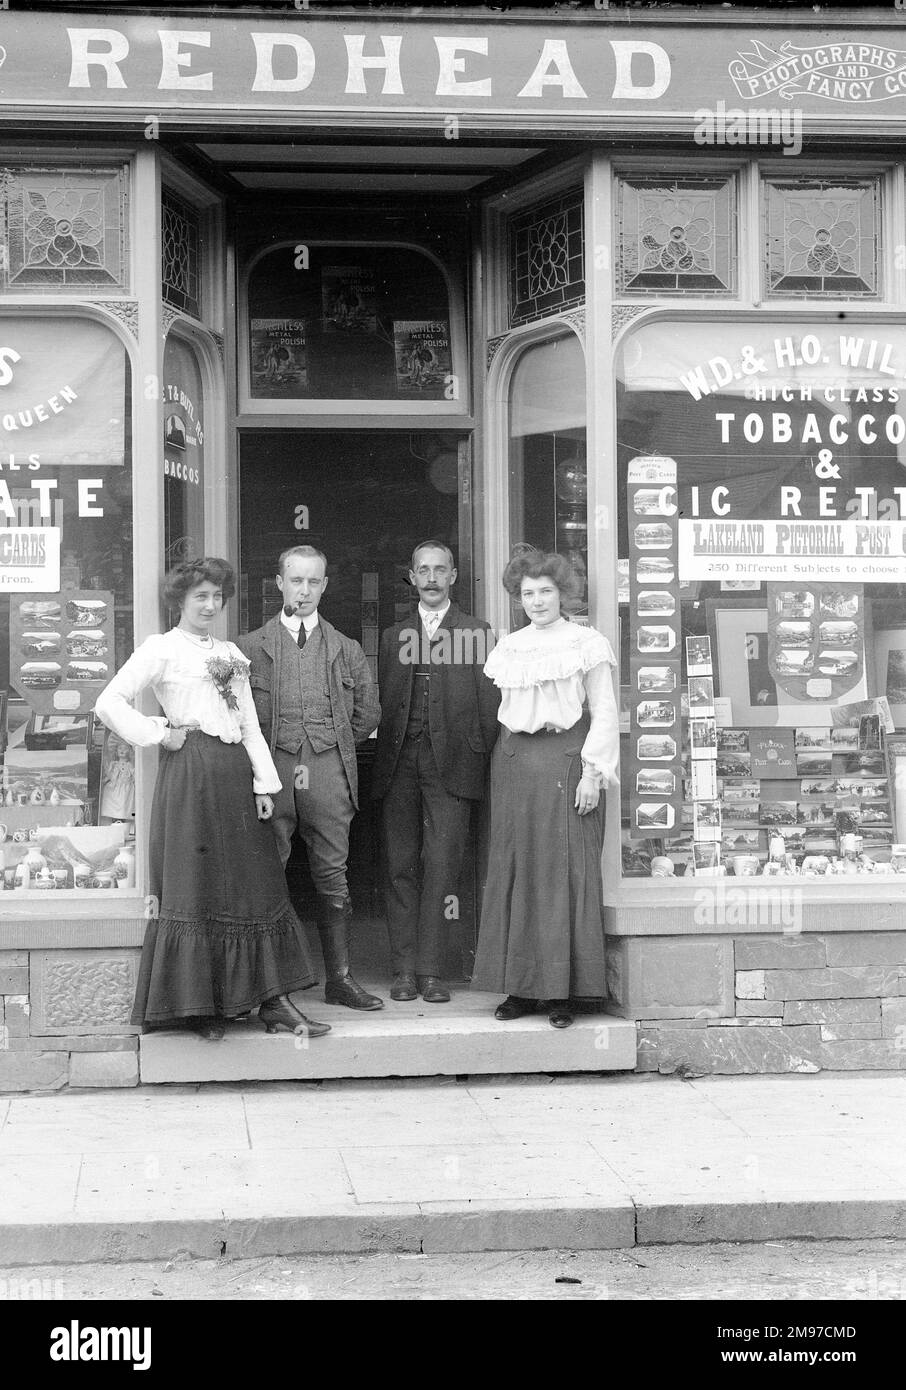 Redhead's Shop, Coniston, befindet sich in der Yewdale Road und wird immer noch als Zeitungskiosk/Souvenirladen geführt. Die Männer in der Tür sind die Freunde des Fotografen Wilson und Nelstrop, und die Frauen werden als "Annie und Kate" identifiziert, die dort gearbeitet haben. Stockfoto